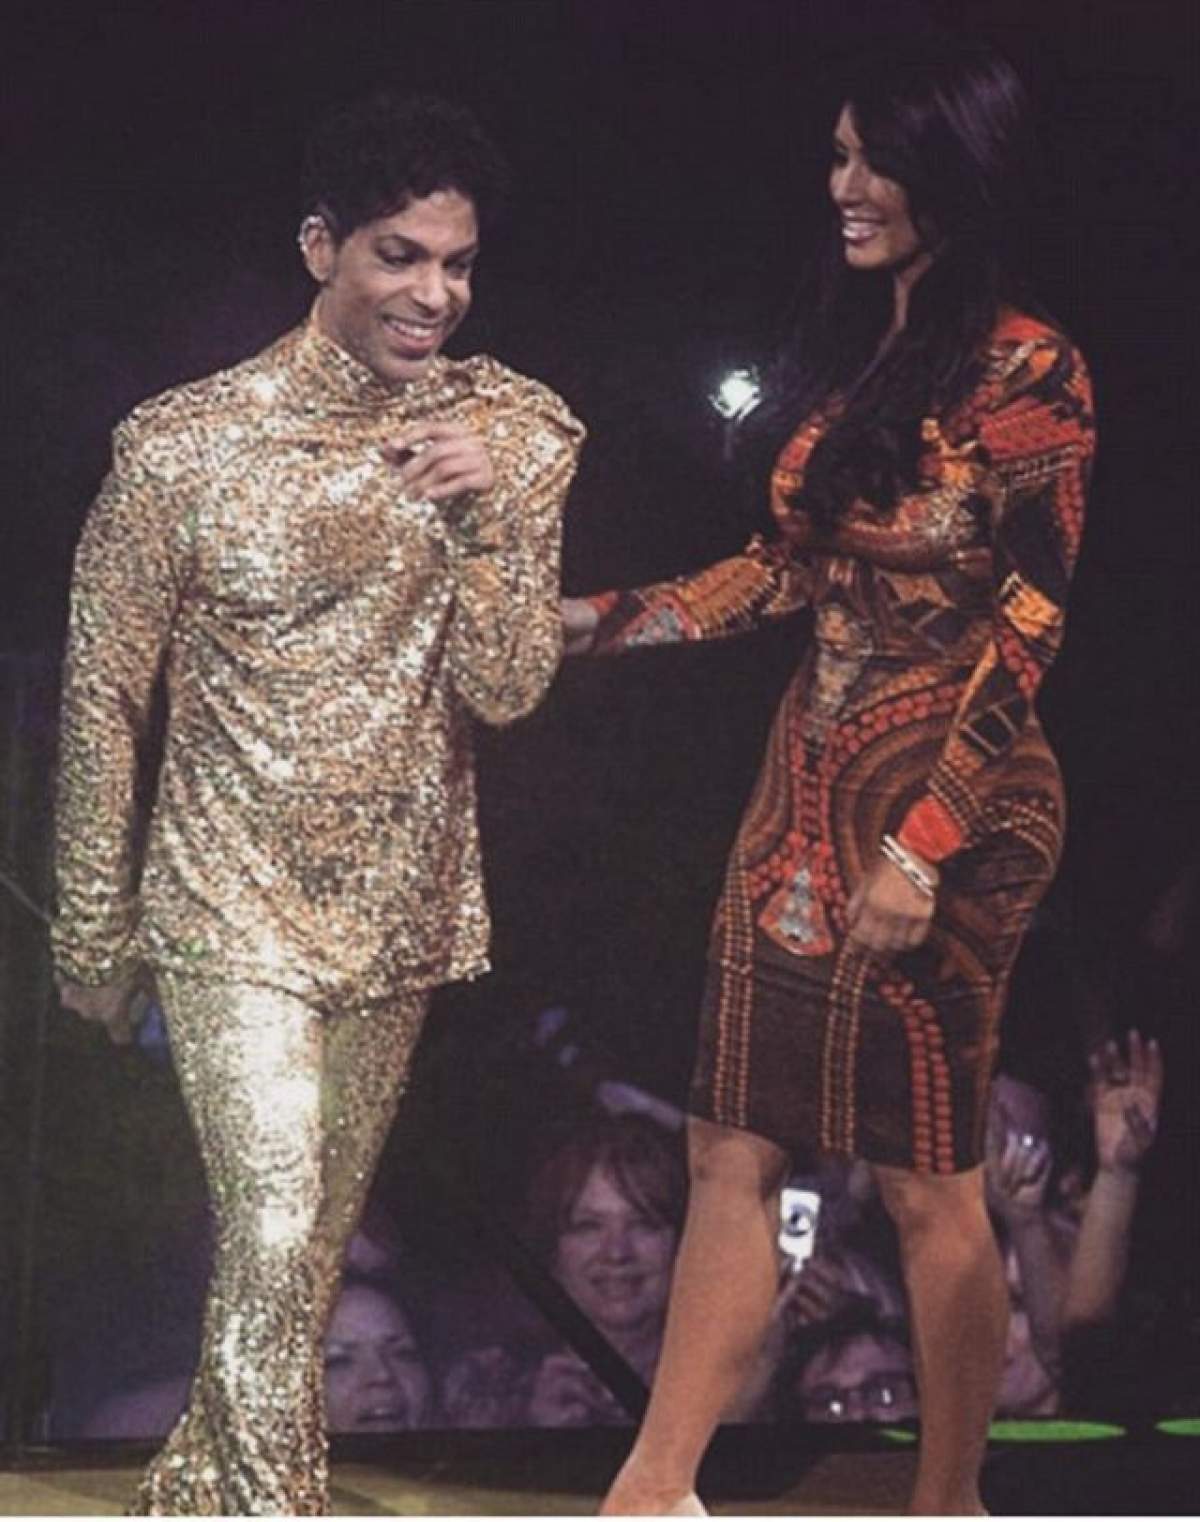 VIDEO / Momentul care va rămâne în istorie! Prince i-a făcut vânt lui Kim Kardashian de pe scenă